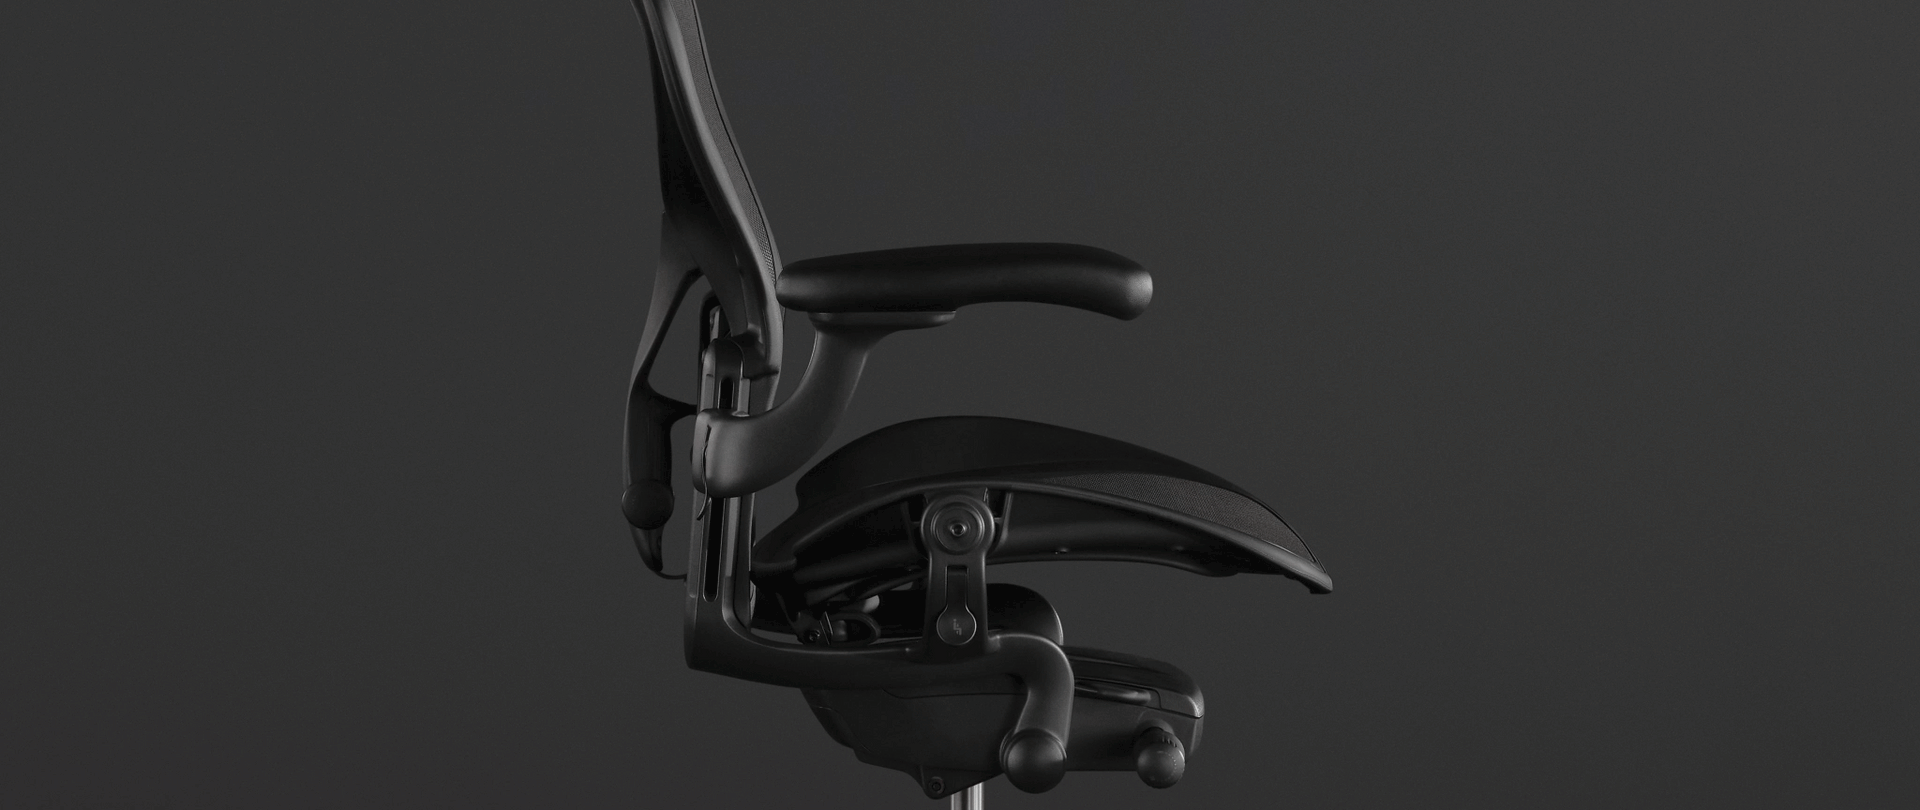 Une animation sur la photo d’un siège Aeron noir montre comment la technologie PostureFit SL offre un support optimal de la colonne vertébrale.